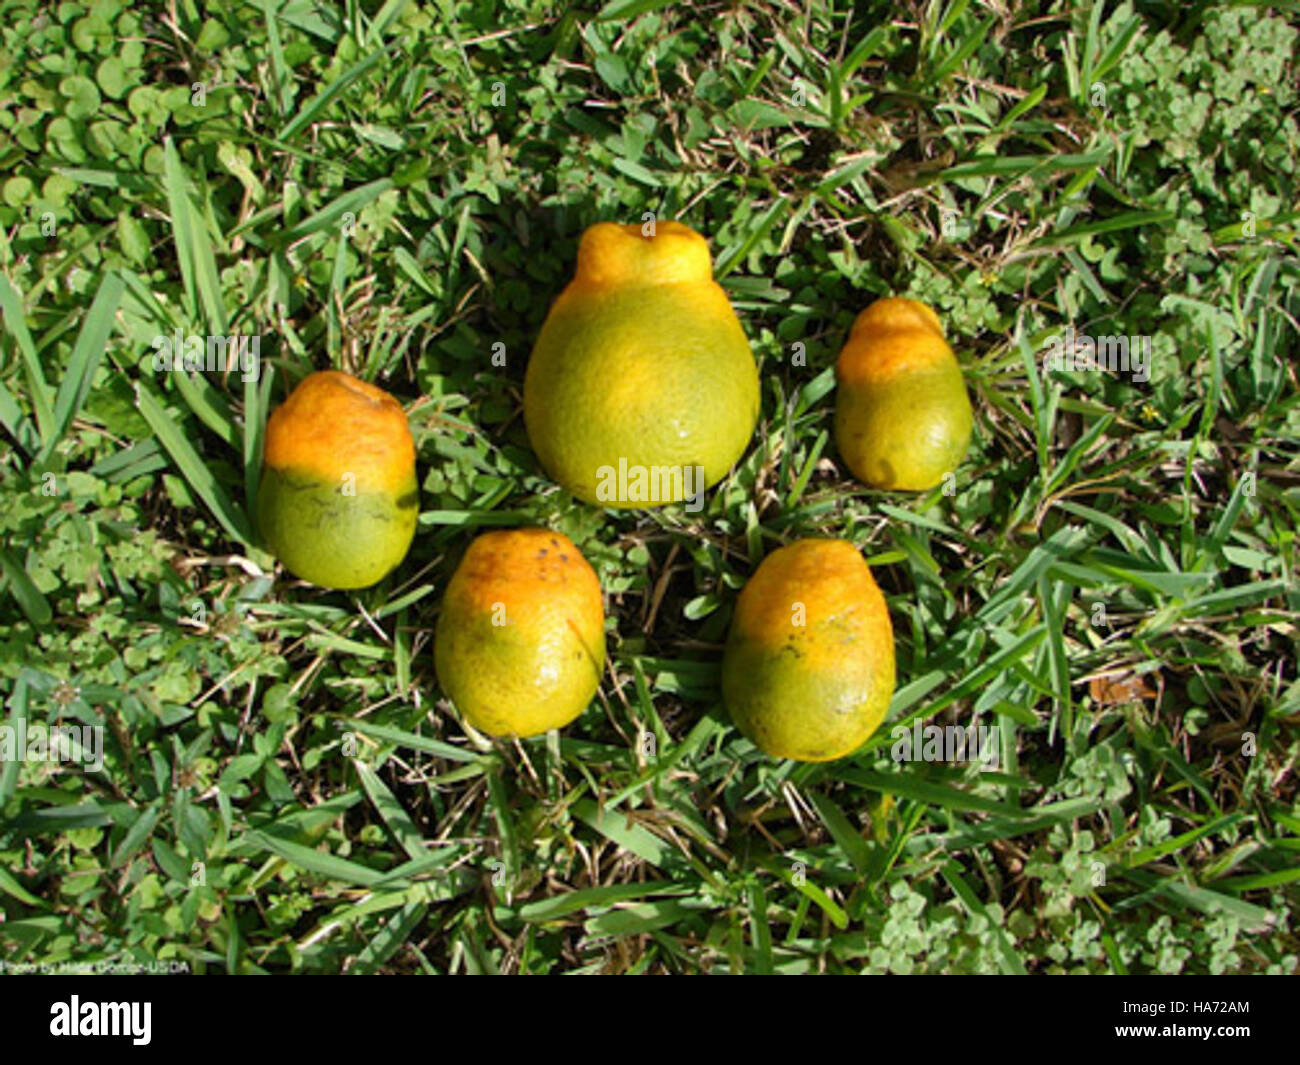 usdagov 4878318617 Citrus Greening and Asian Citrus Psyllid (ACP) Stock Photo